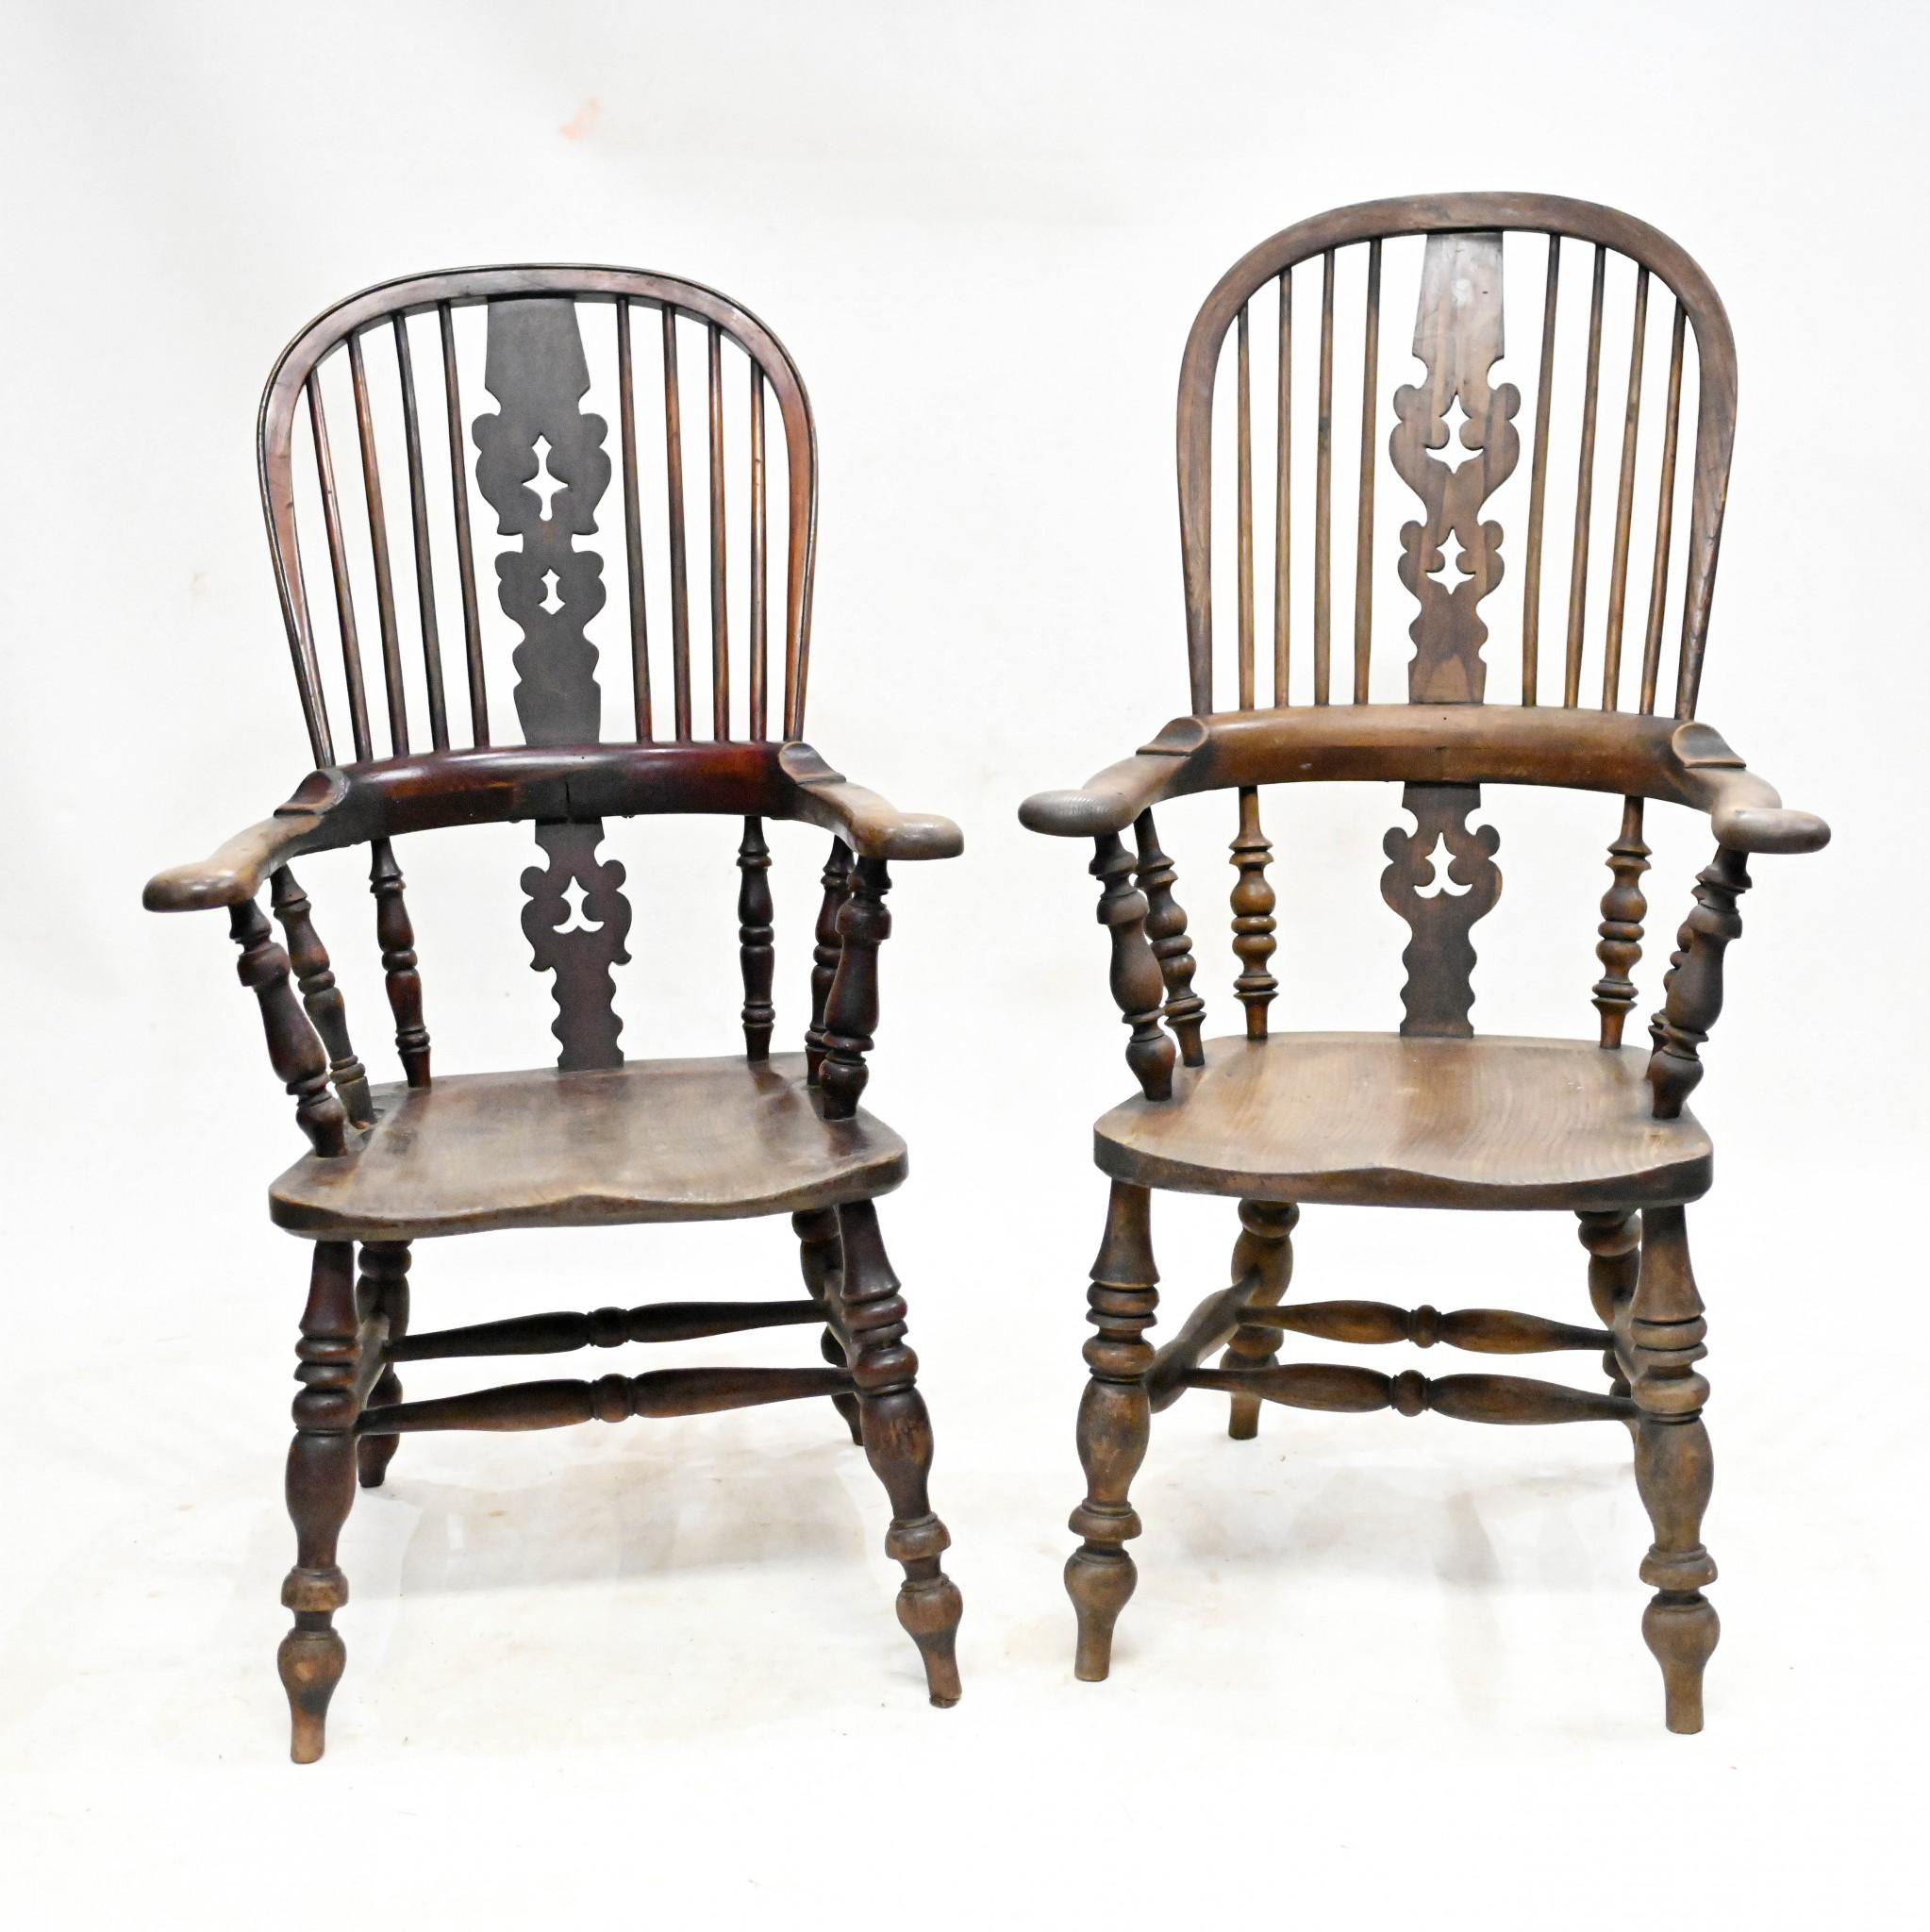 Ein Paar breitschultrige Windsor-Stühle aus Eichenholz mit Sitzflächen aus Ulme
Wahrscheinlich ein Set für Sie und Ihn
CIRCA 1860
Sehr solide und robust, große Paar Bauernhof Akzent Stühle
Gekauft aus einem Hausverkauf eines Privathauses im Londoner